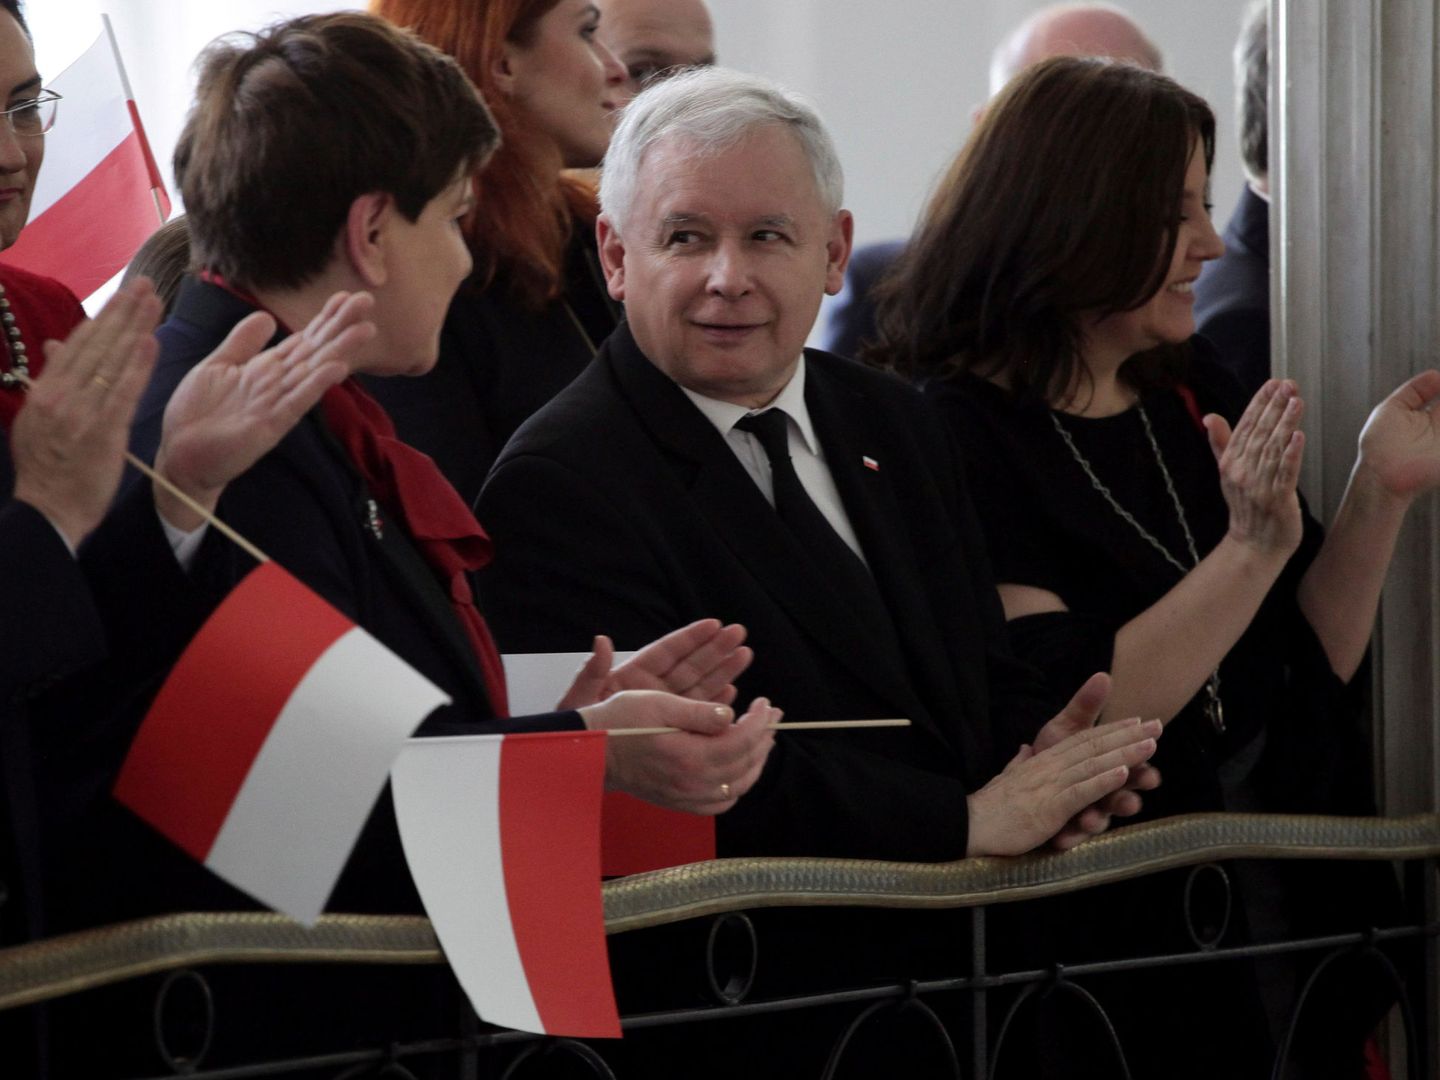 La Primera Ministra Beata Szydlo junto a Jaroslaw Kaczynski durante la ceremonia del Día Nacional de la Bandera, en el Parlamento de Varsovia el 2 de mayo de 2016 (Reuters)